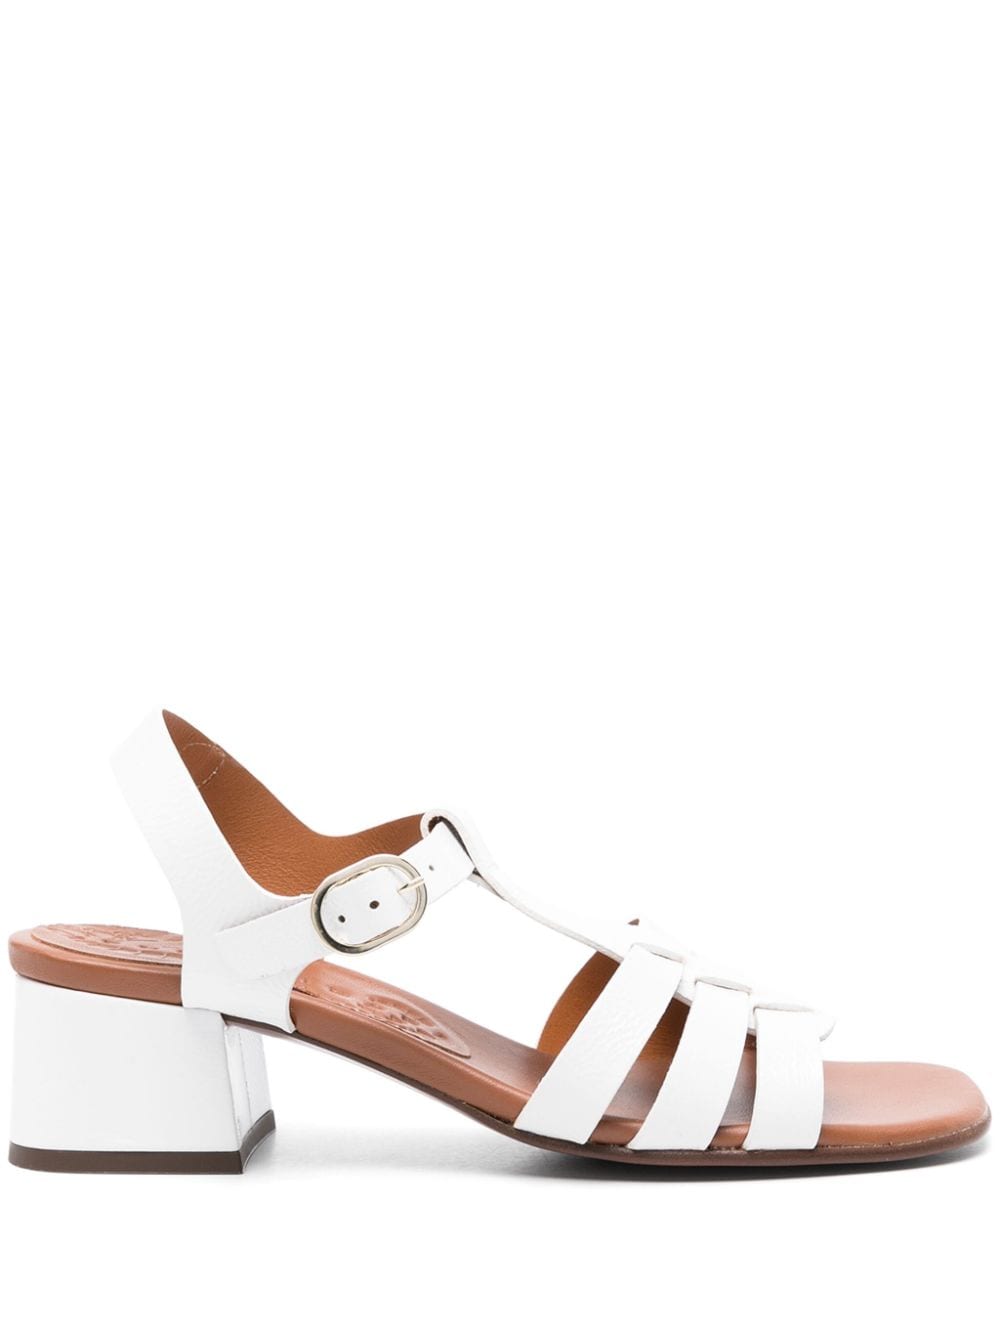 Chie Mihara Quakin 35mm sandals - White von Chie Mihara